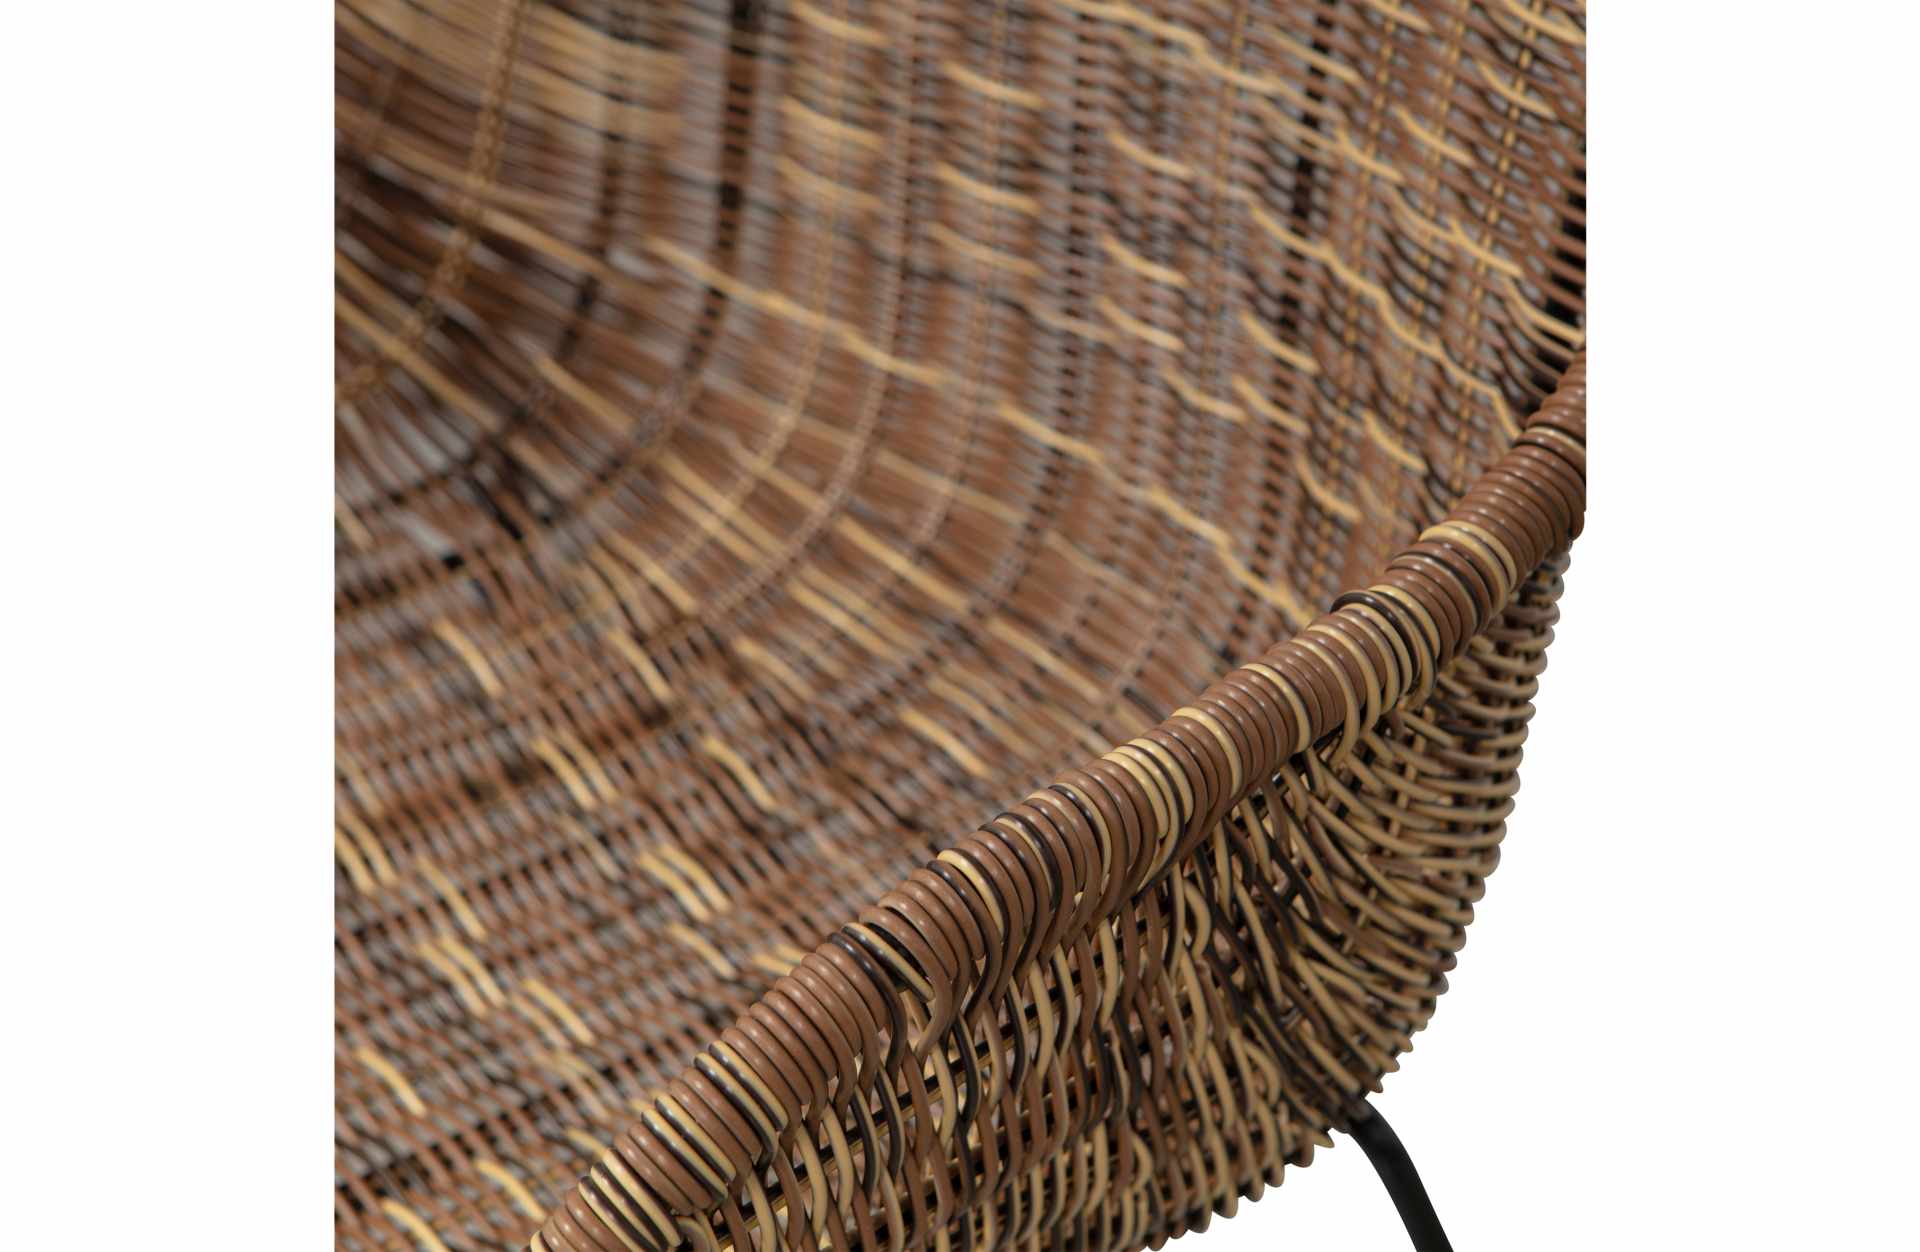 Der Esszimmerstuhl Willow überzeugt mit seinem klassischen Design. Gefertigt wurde er aus künstlichem Rattan, welches einen natürlichen Farbton besitzen. Das Gestell ist aus Metall und hat eine schwarze Farbe. Die Sitzhöhe beträgt 47 cm.